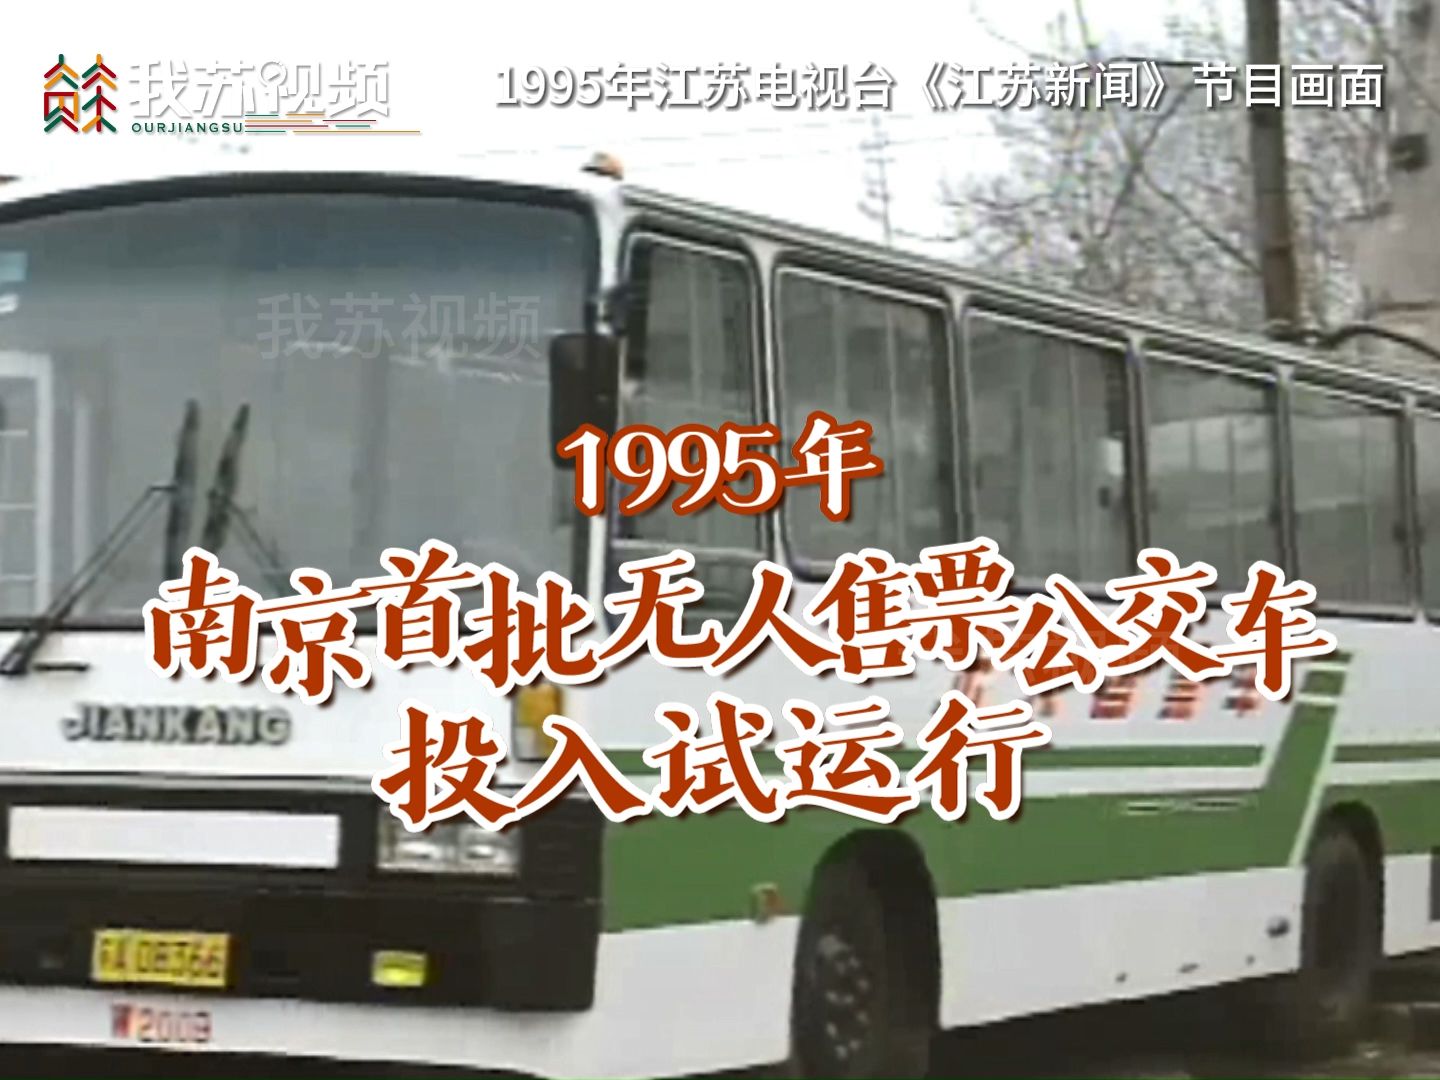 1995年南京第一辆无人售票公交车运行